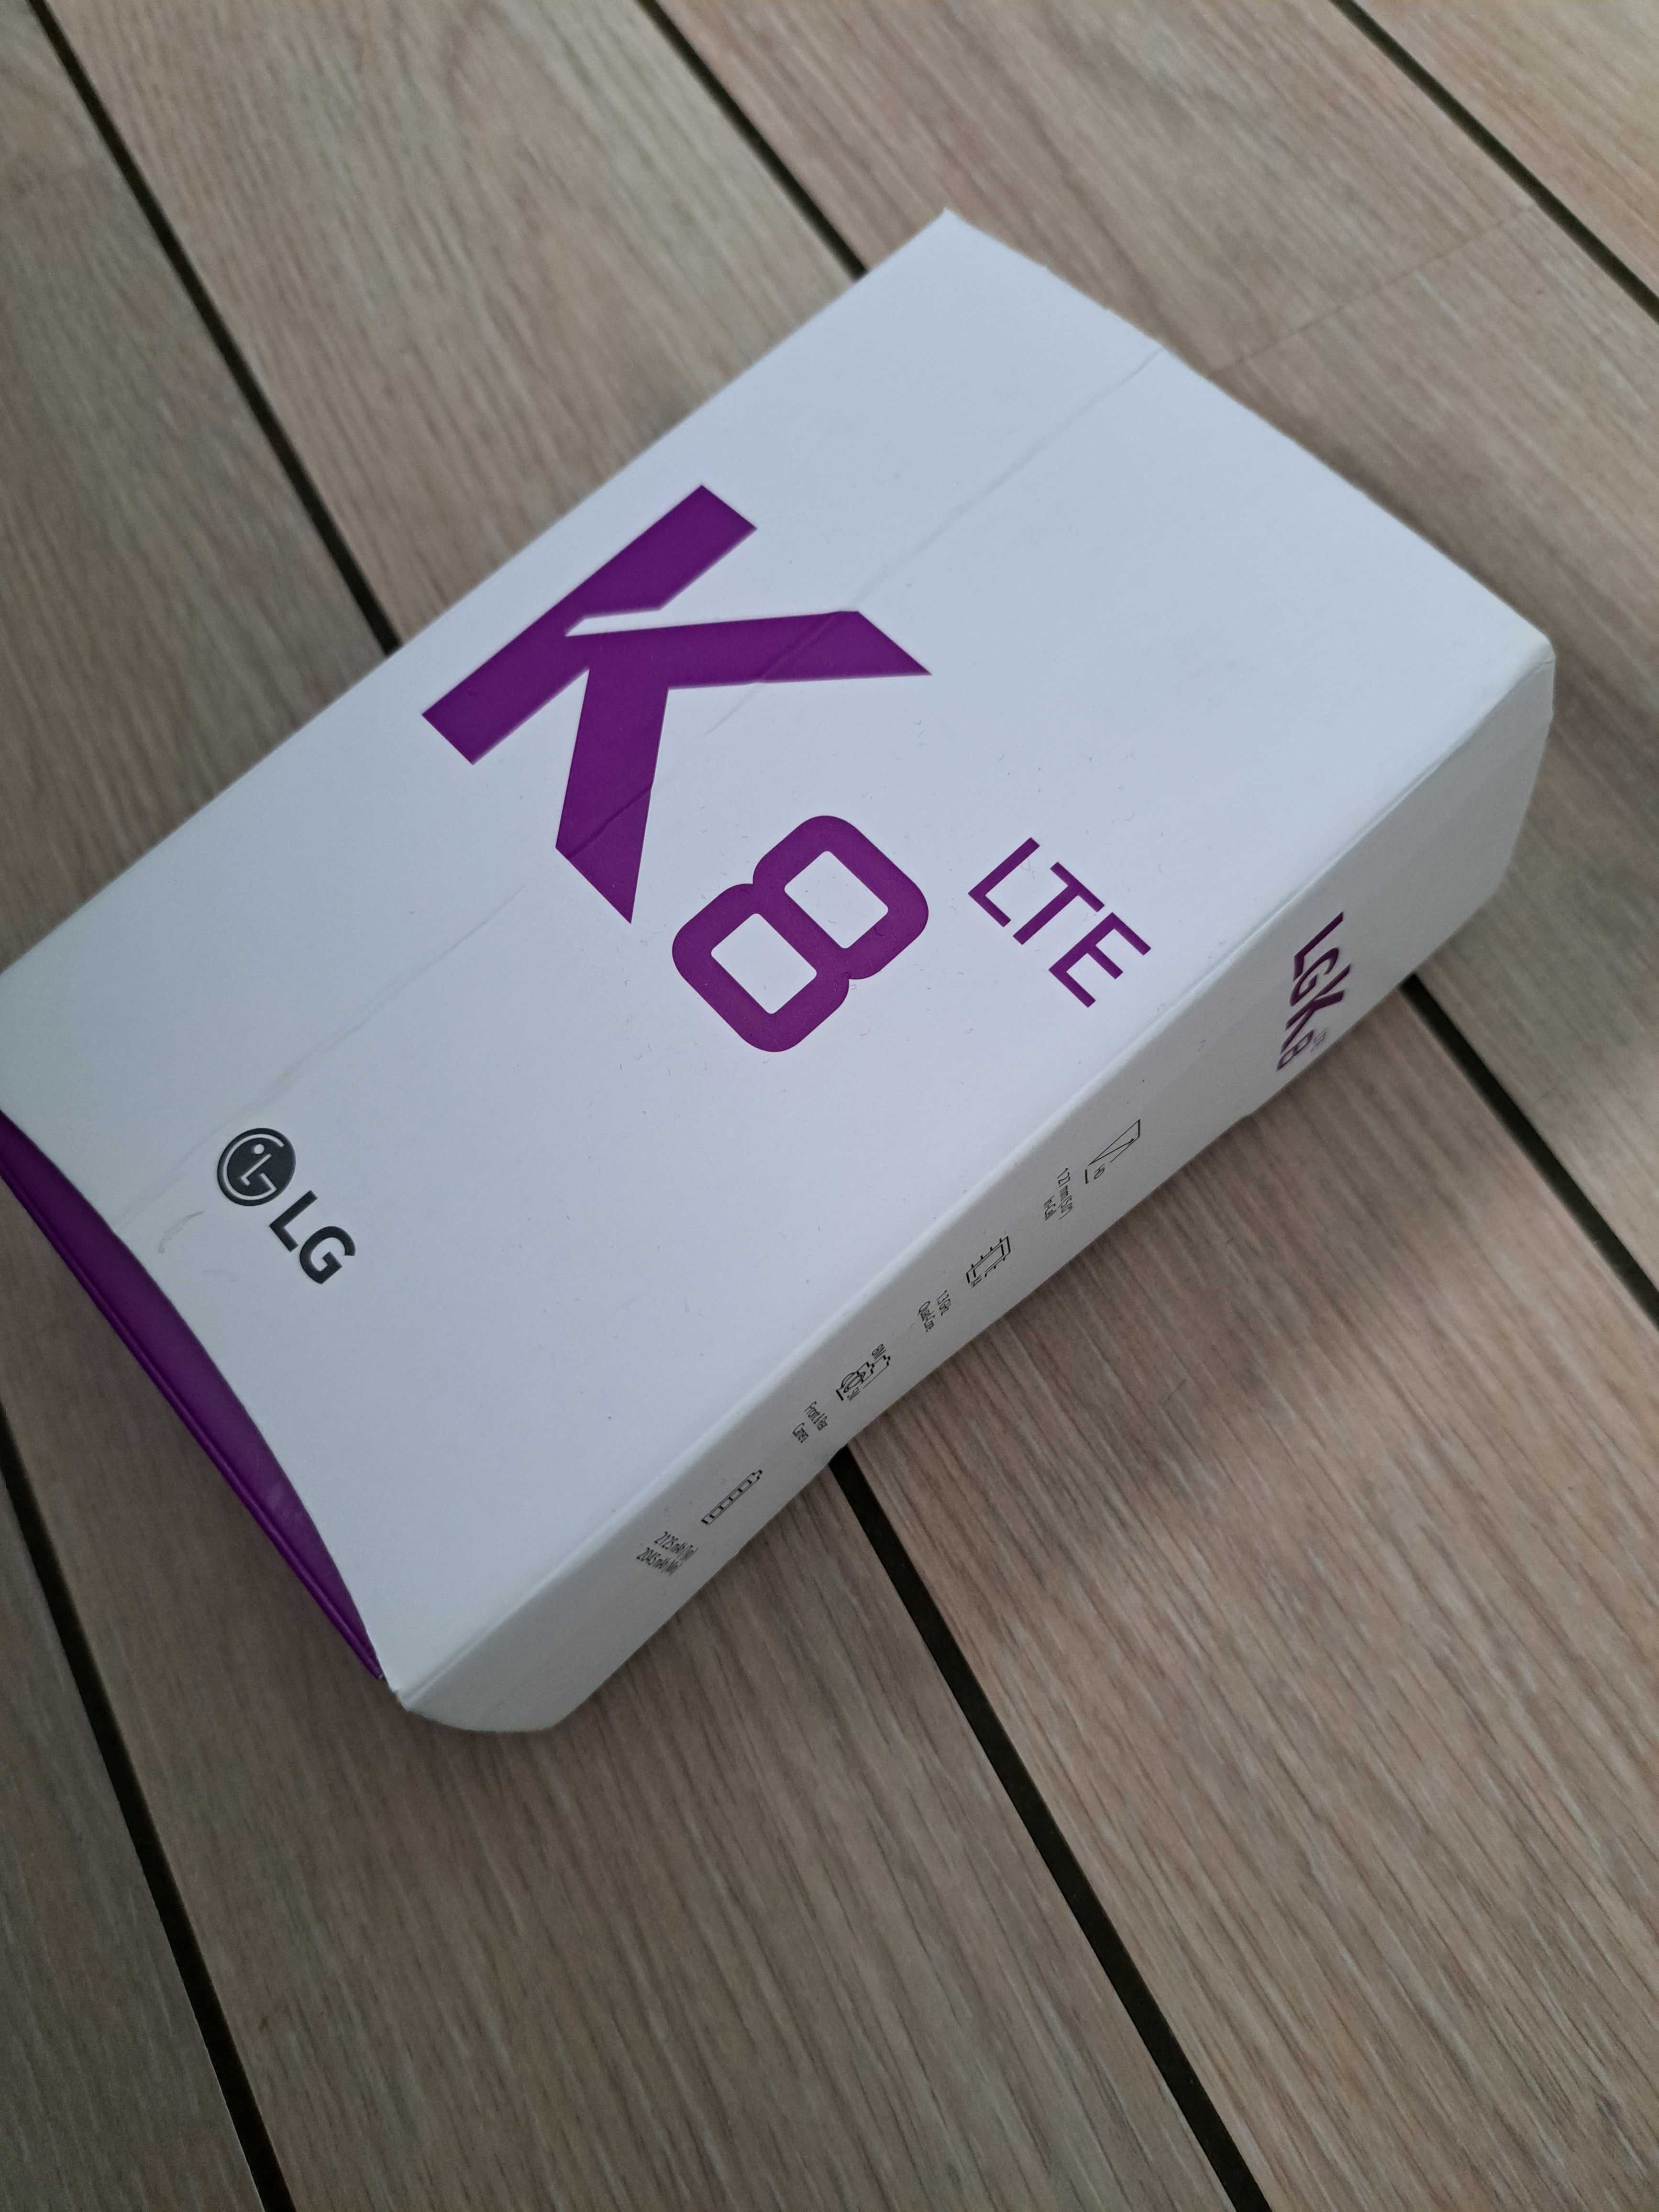 LG K8 LTE Kartonik Opakowanie Broszury